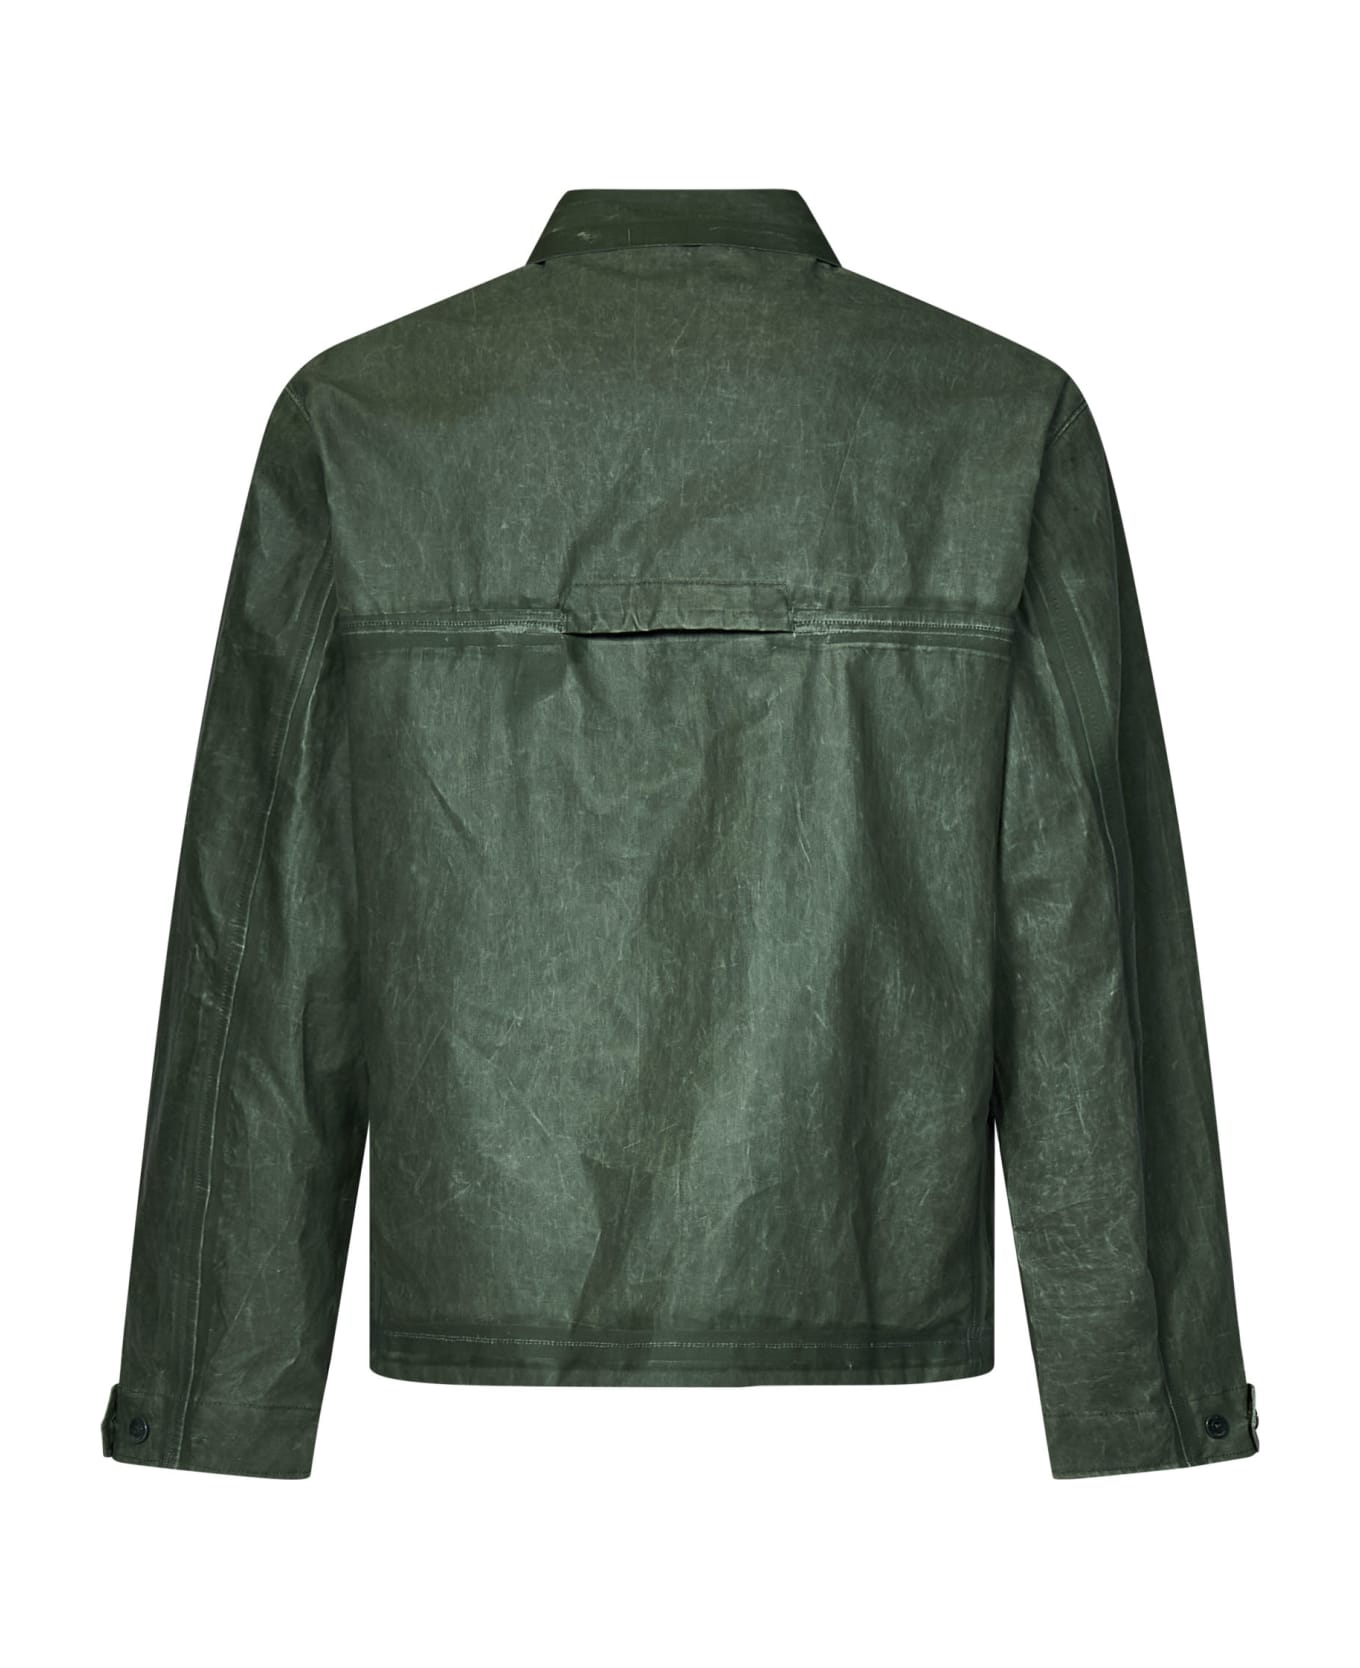 C.P. Company Jacket - DUCK GREEN